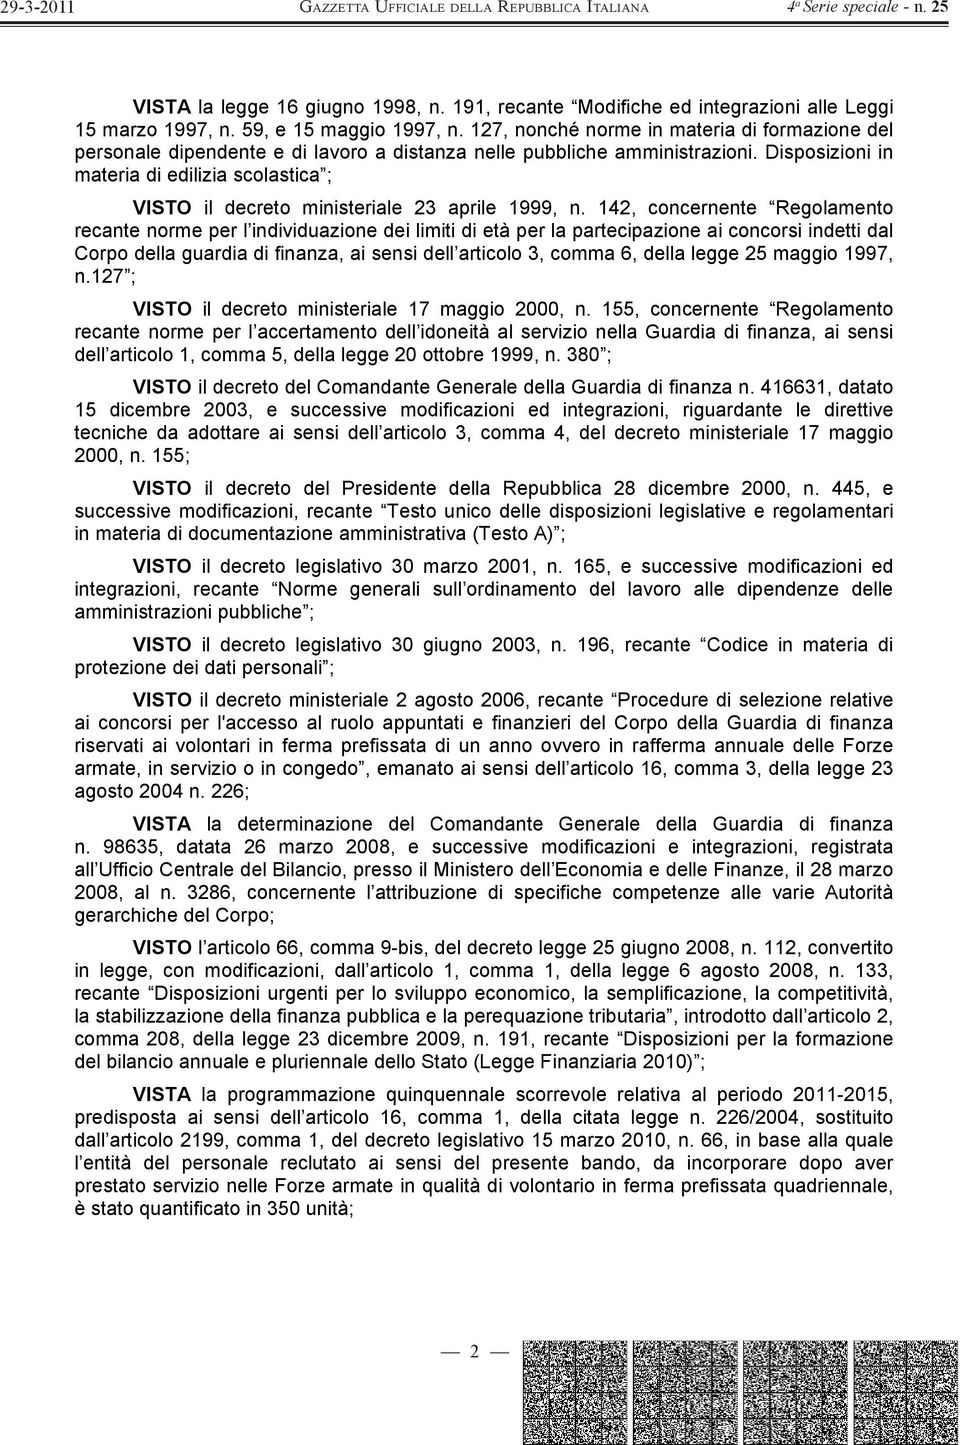 Disposizioni in materia di edilizia scolastica ; VISTO il decreto ministeriale 23 aprile 1999, n.